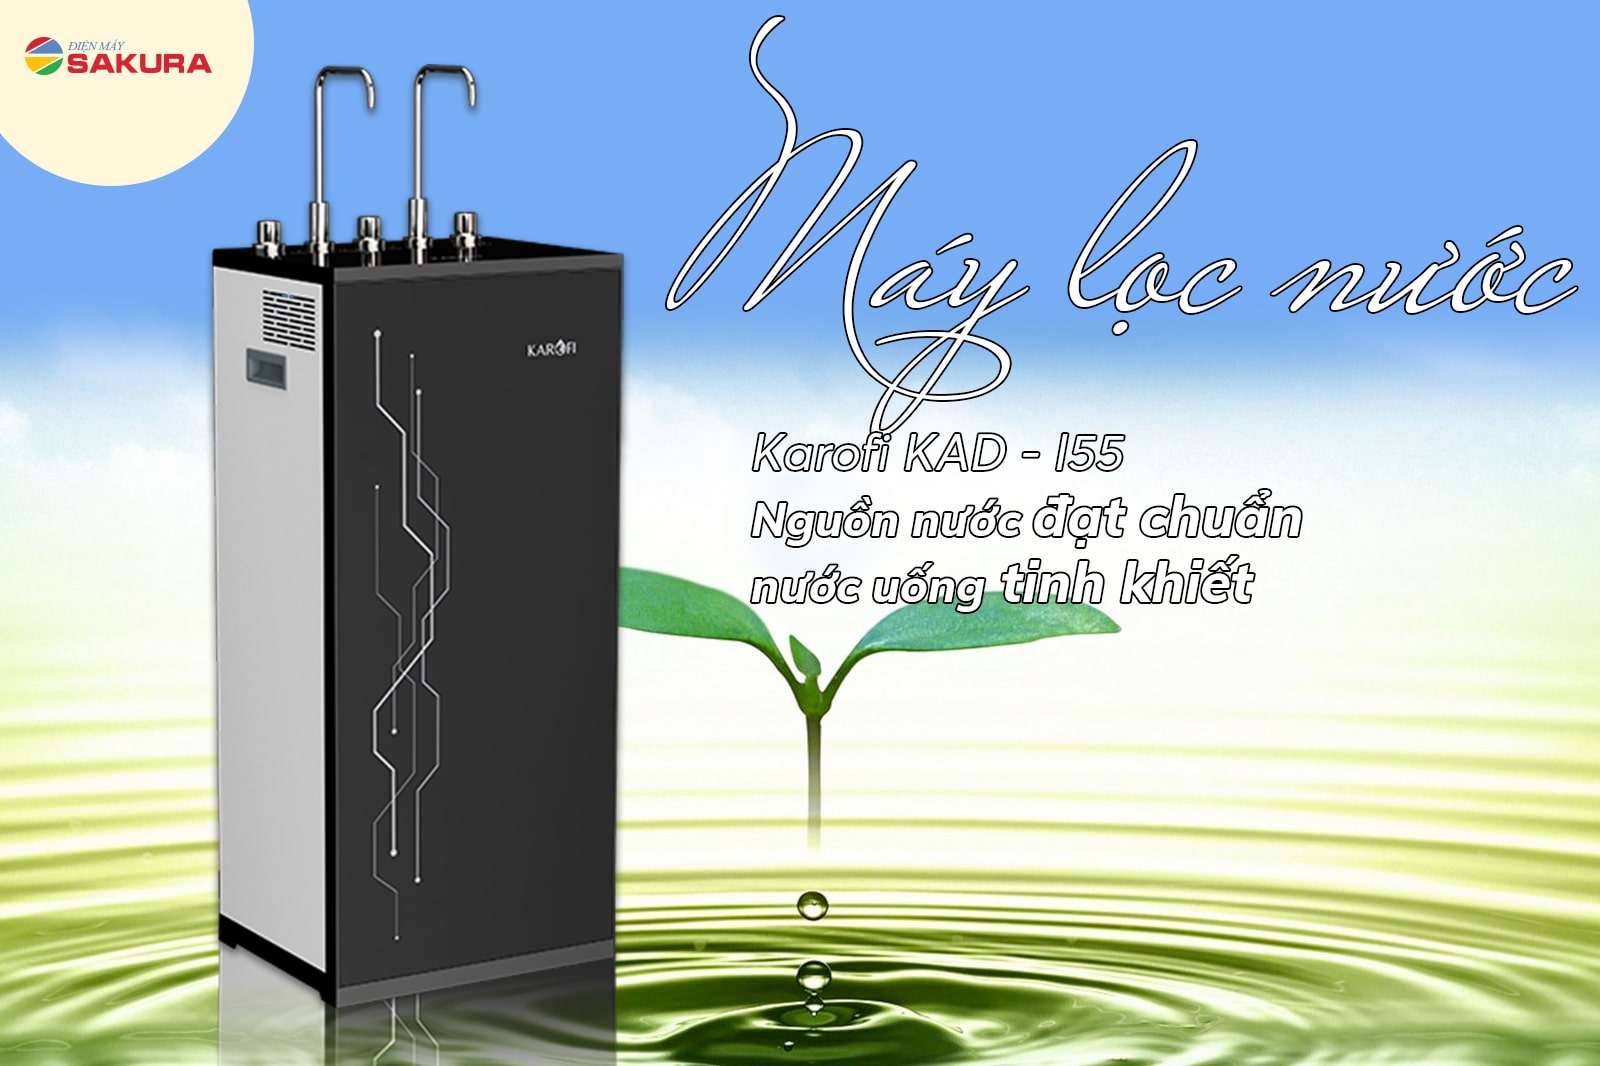 Nguồn nước từ máy lọc nước Karofi KAD - I55 đạt chuẩn nước uống tinh khiết